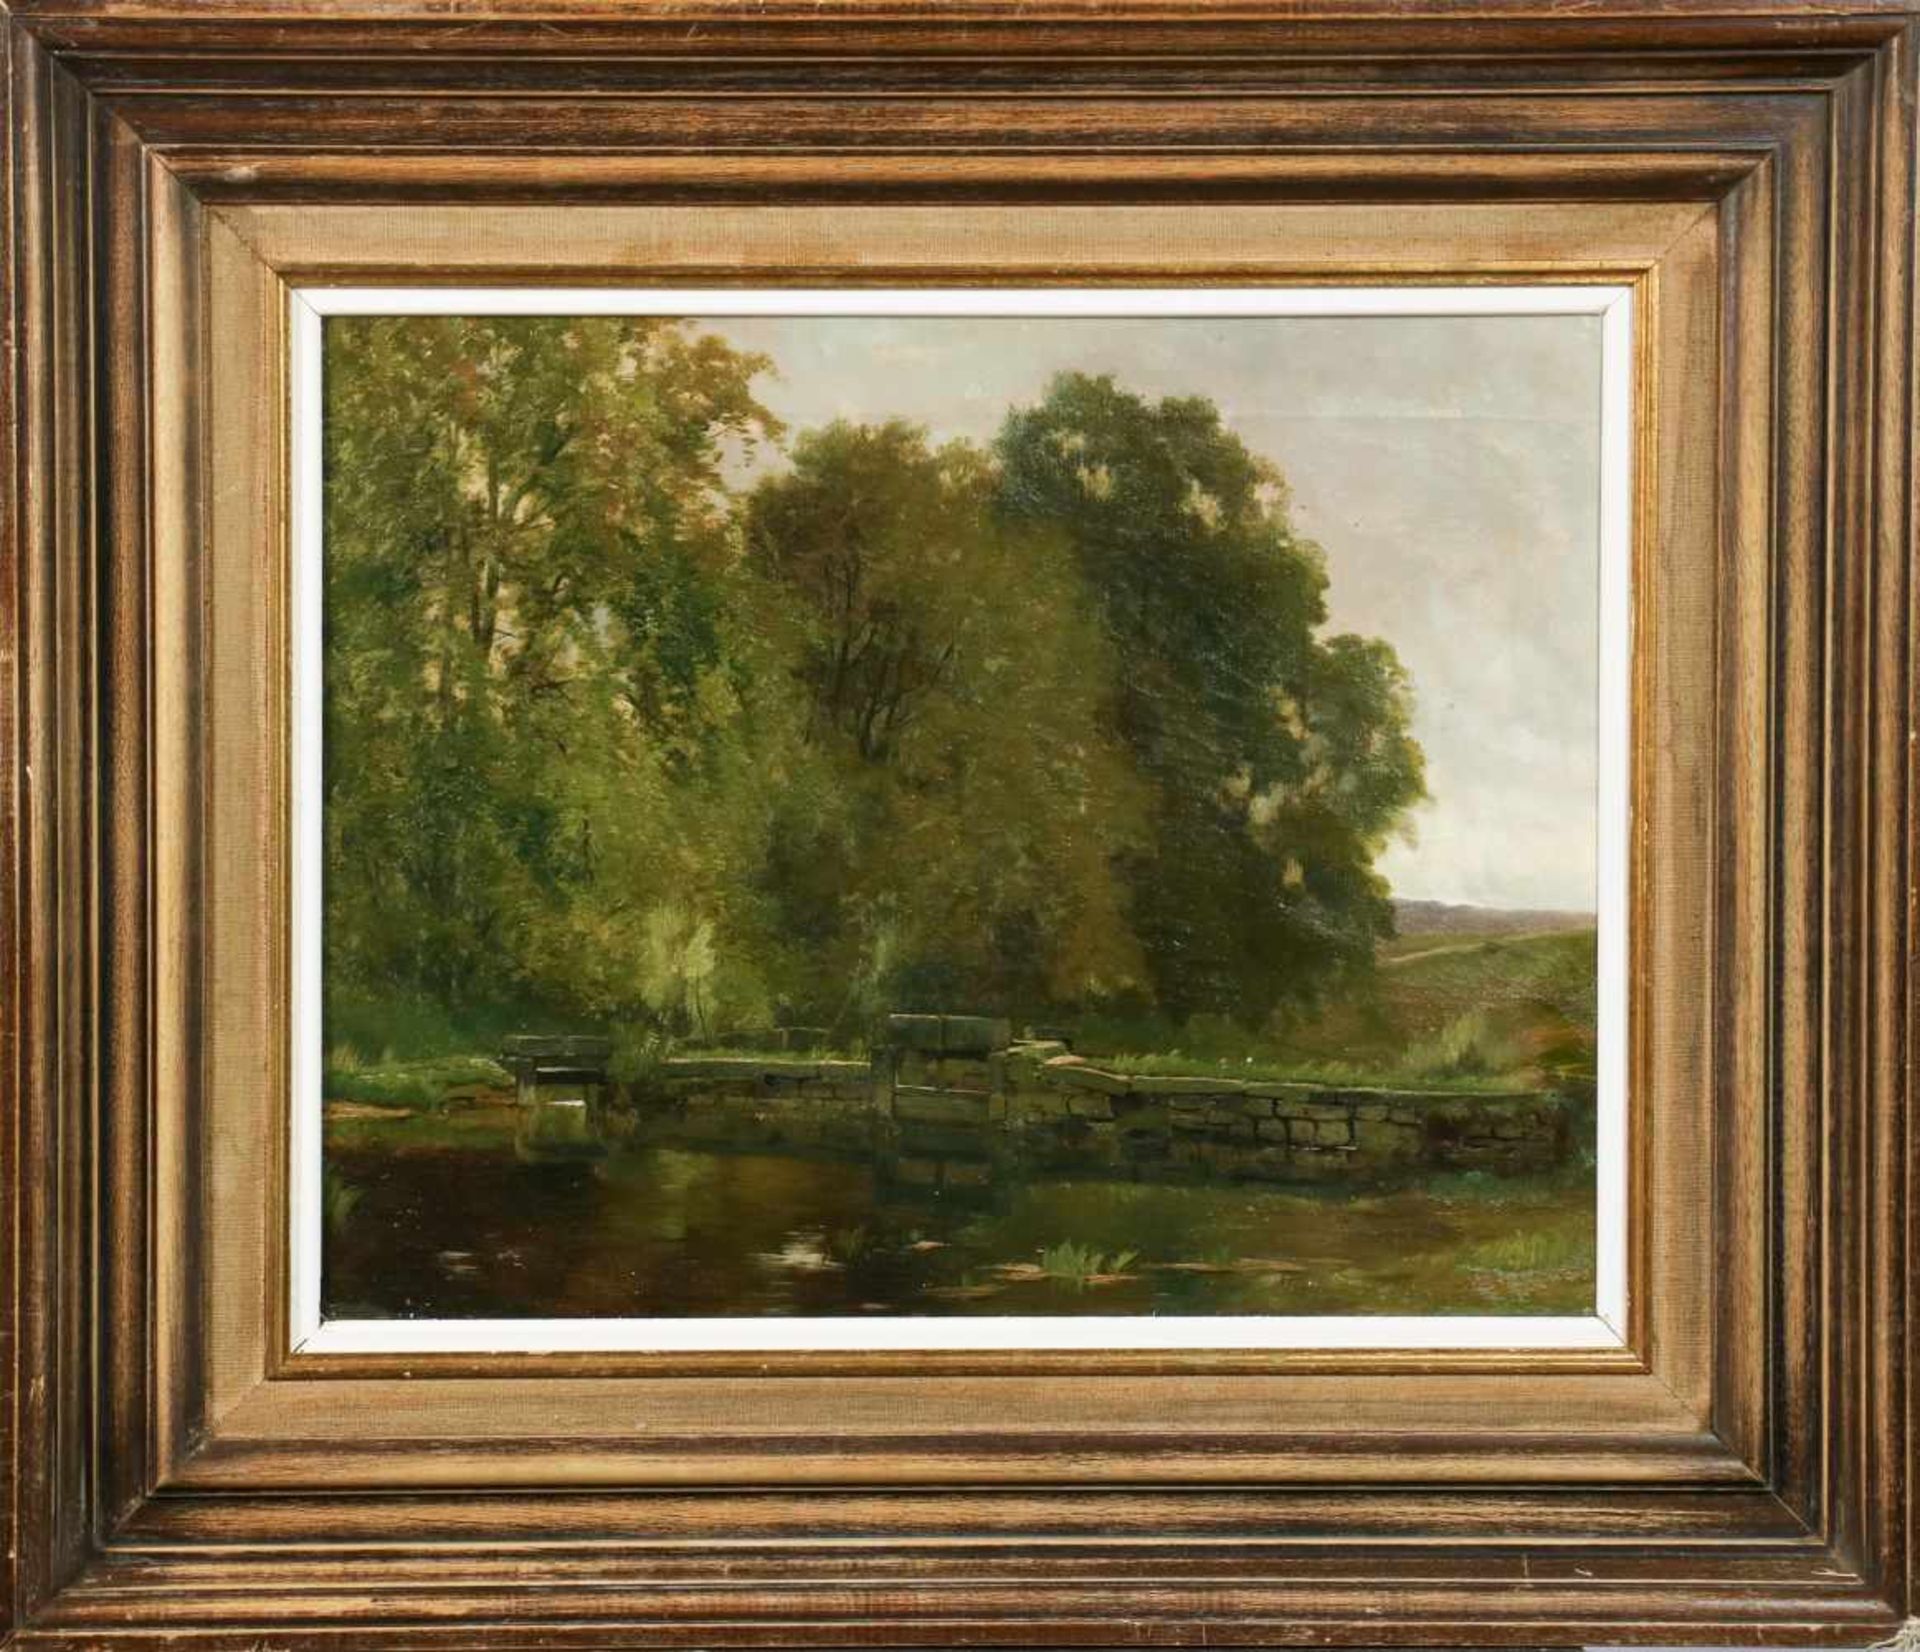 Hollandse School, ca. 1900. Sluisjes in een landschap, olieverf op doek. Afm. 39 x 50 cm. - Bild 2 aus 3